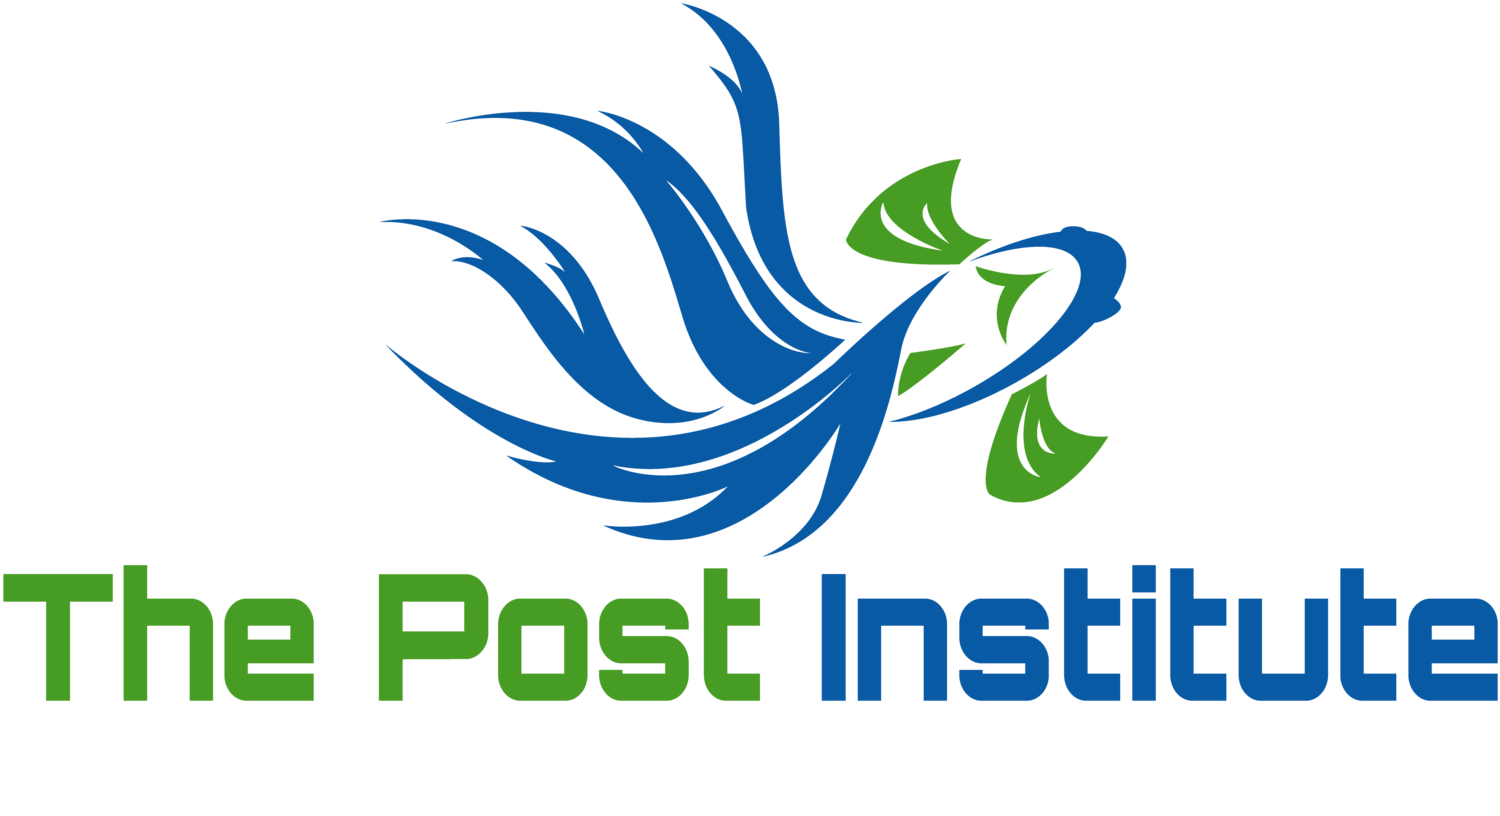 The Post Institute